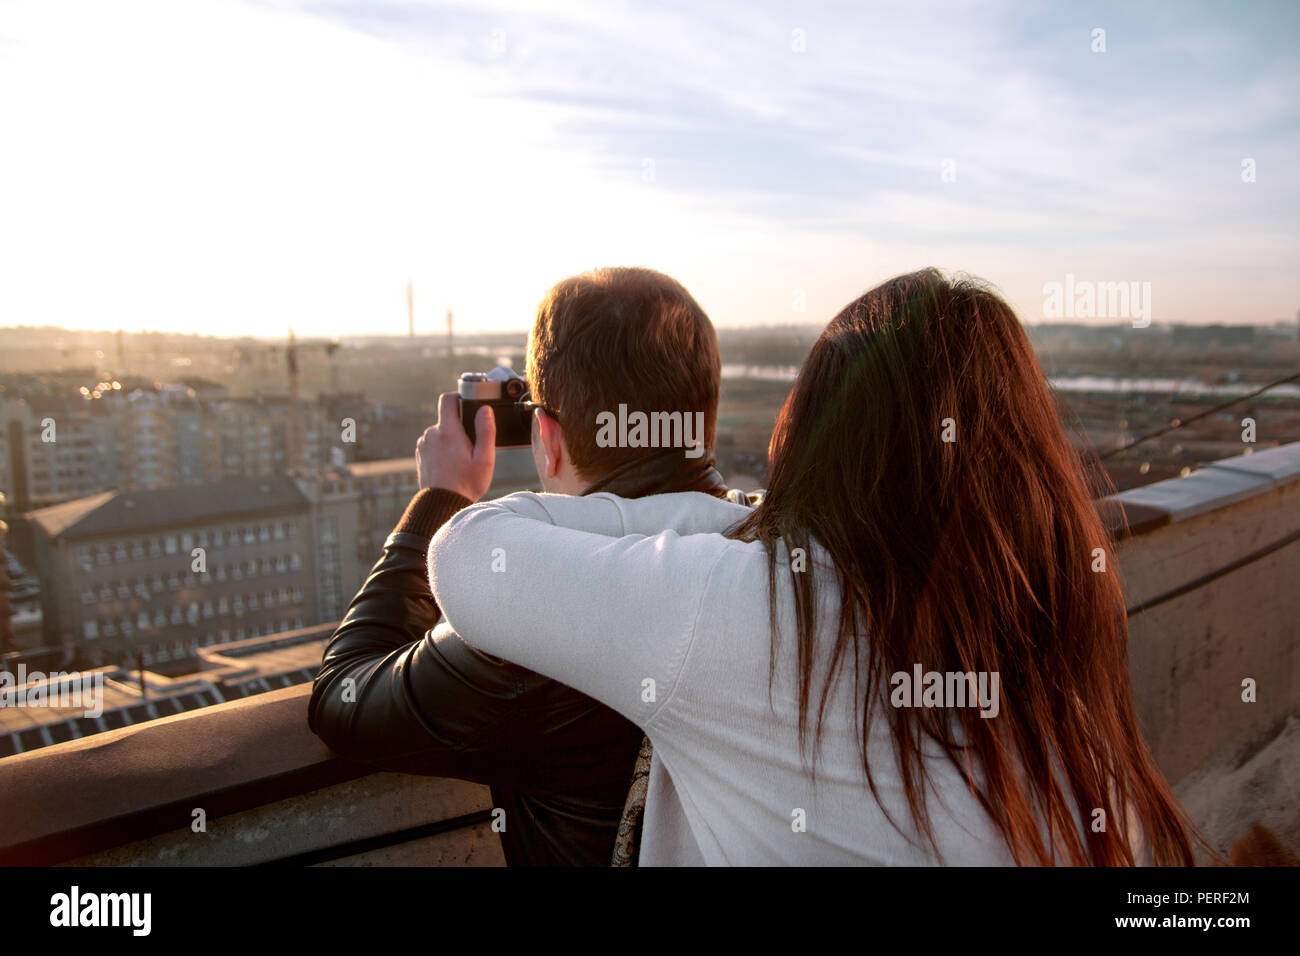 Paar Fotos von den Sonnenuntergang auf der Dachterrasse der Stadt. Paar genießt die Sonne auf dem Dach und ein junger Mann fotografieren Panorama der Stadt. Stockfoto